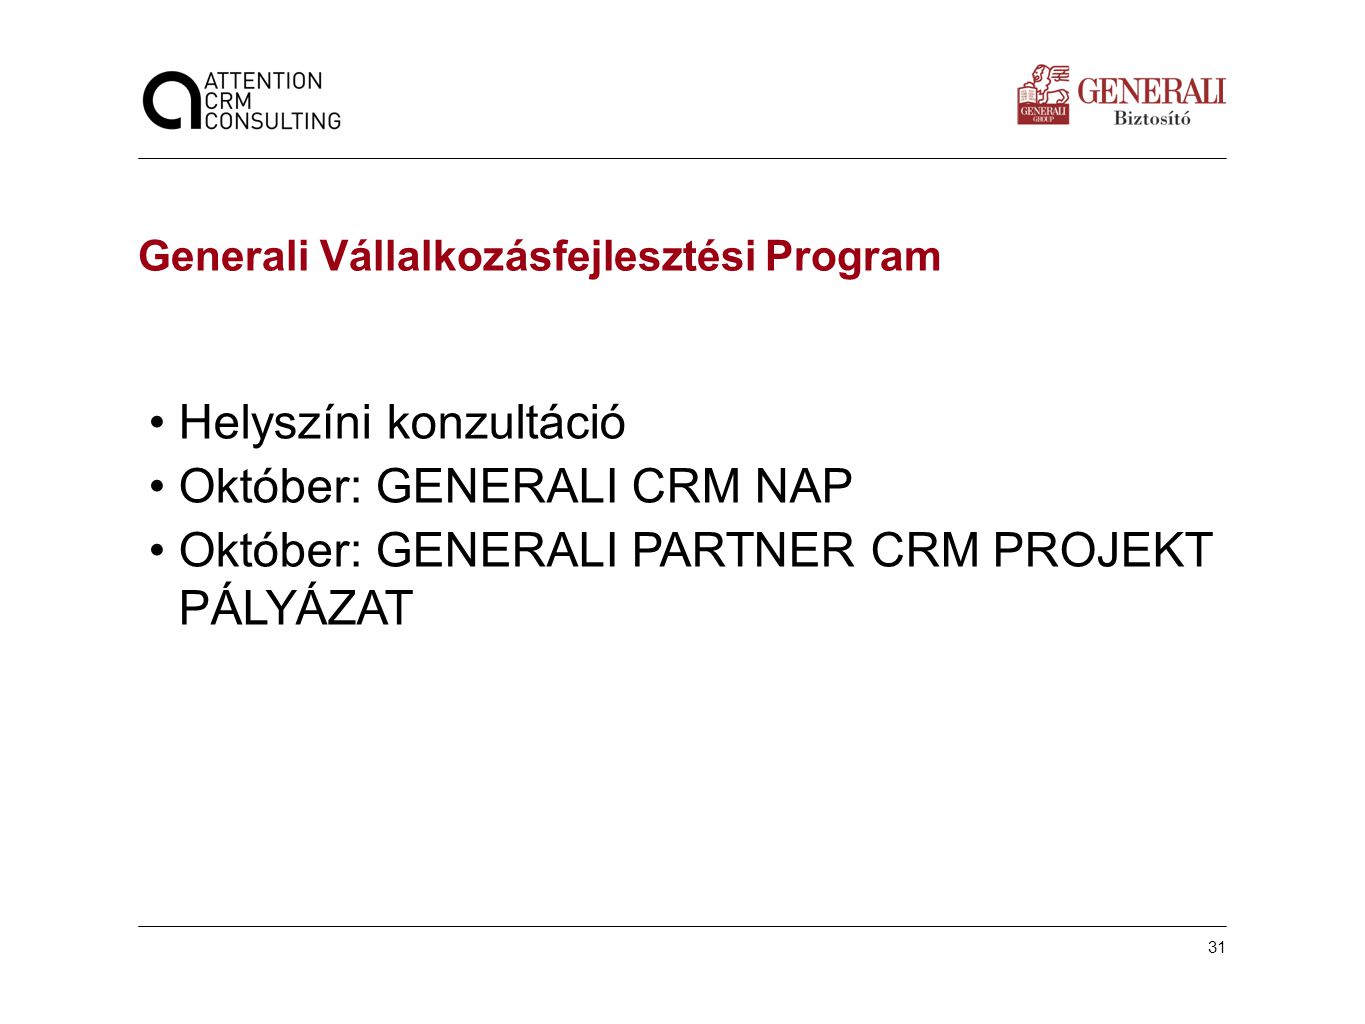 Helyszíni konzultáció Október: GENERALI CRM NAP